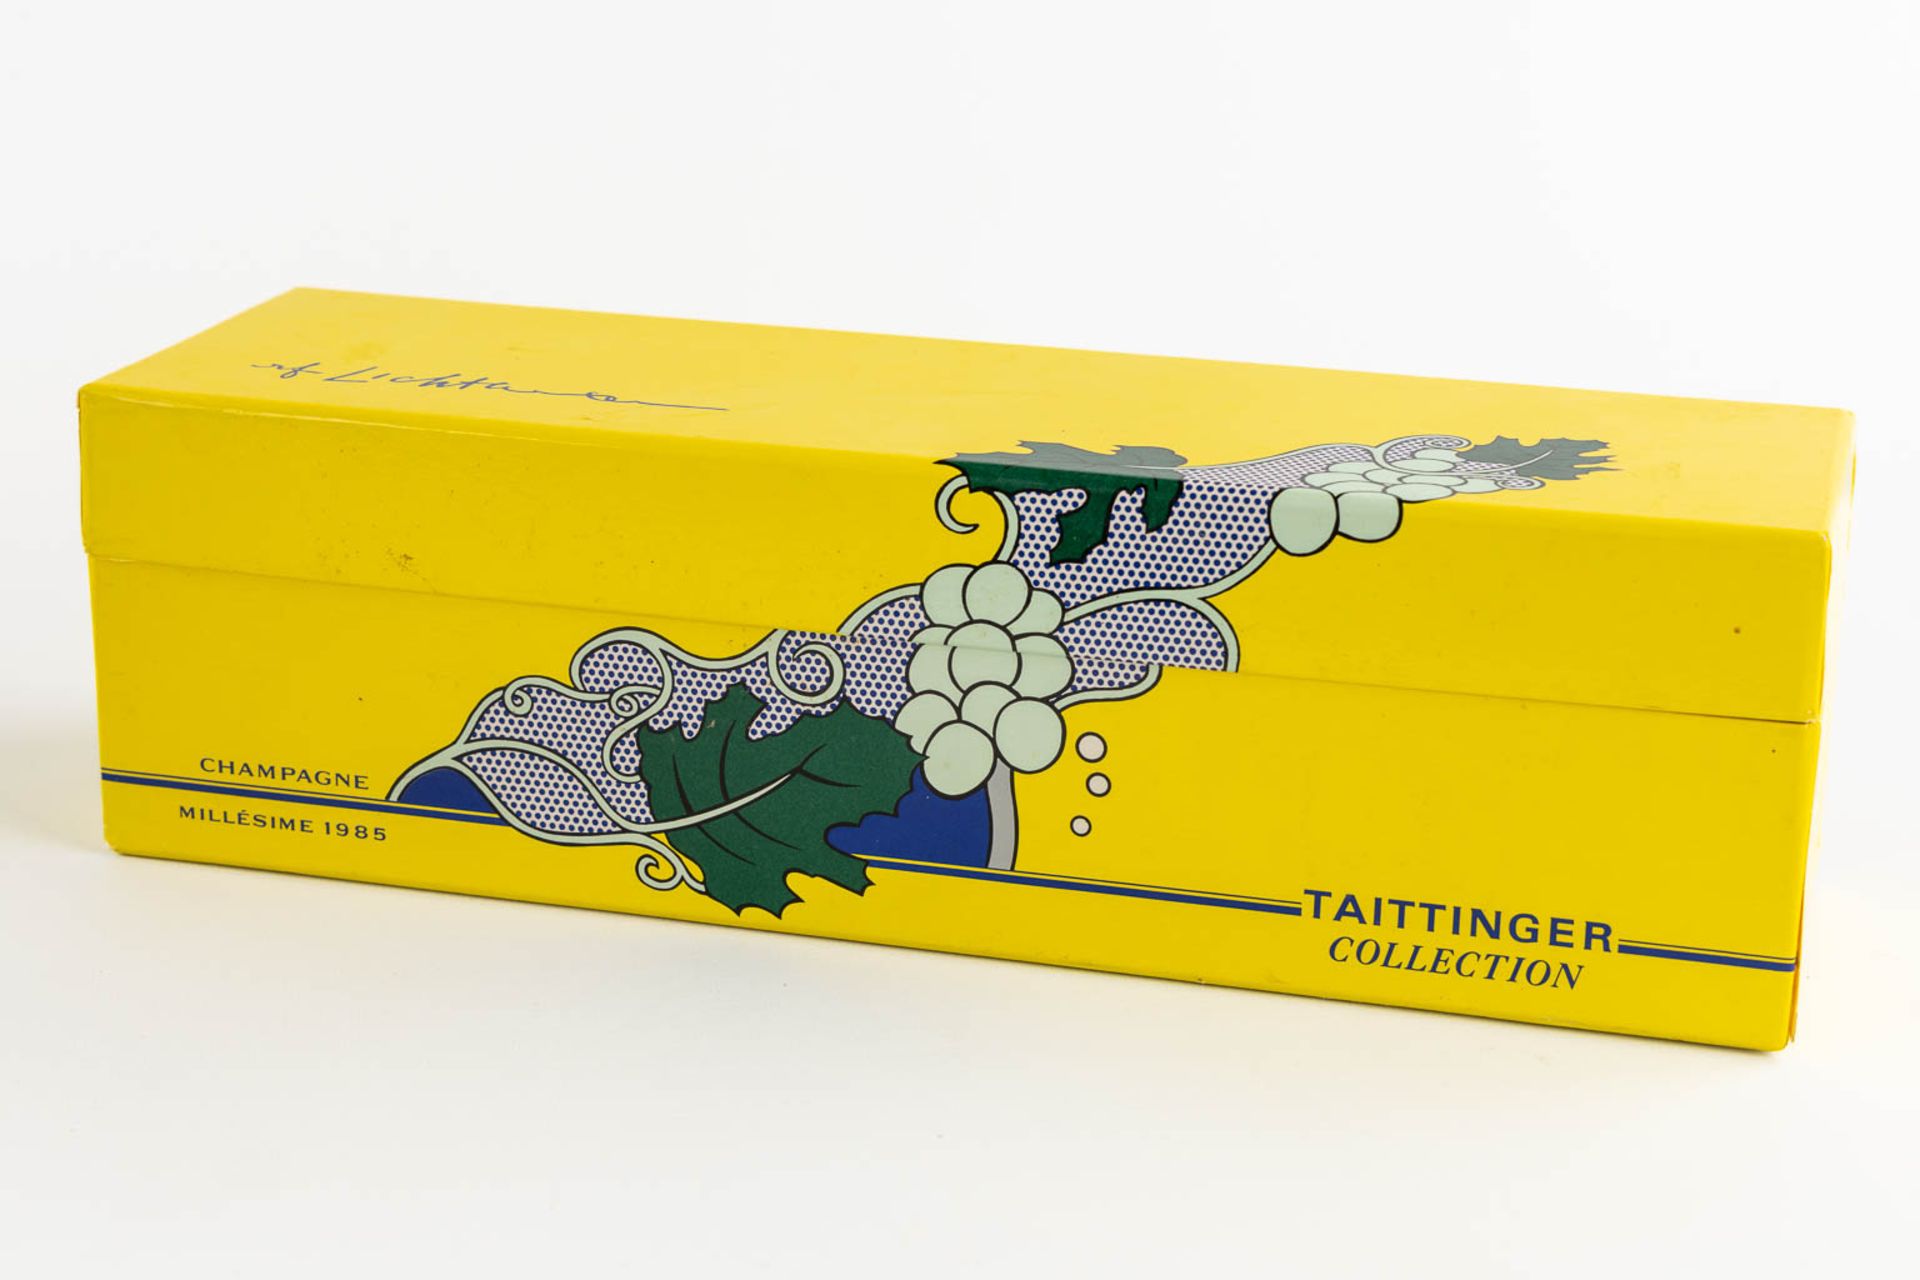 1985 Taittinger Collection Roy Lichtenstein, Champagne - Image 3 of 3